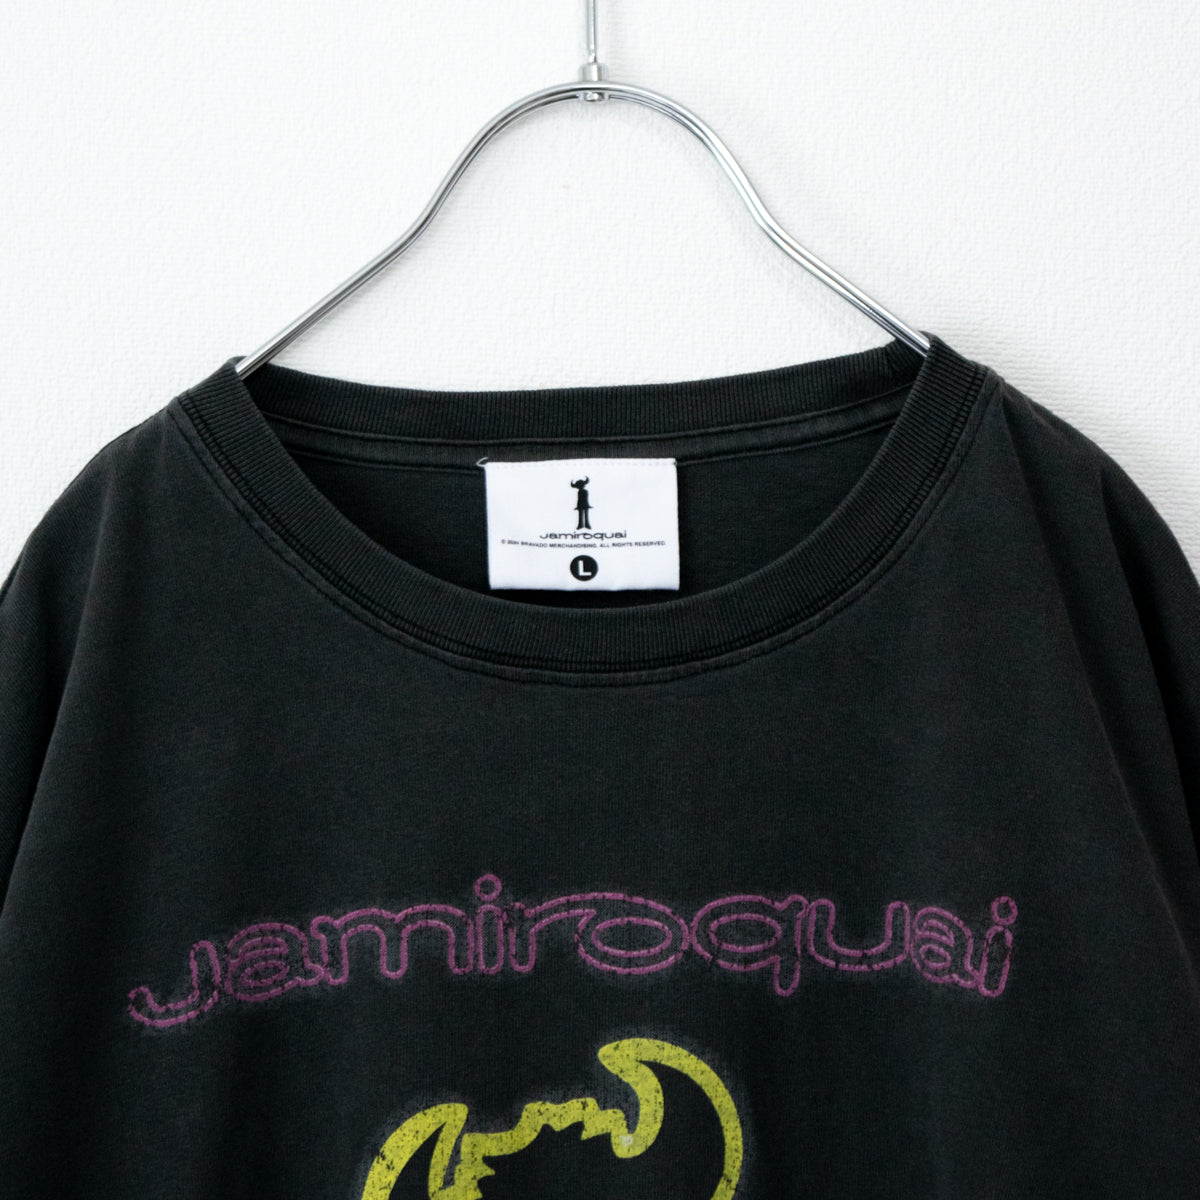 Jamiroquai ジャミロクワイ ロゴ Tシャツ BLACK